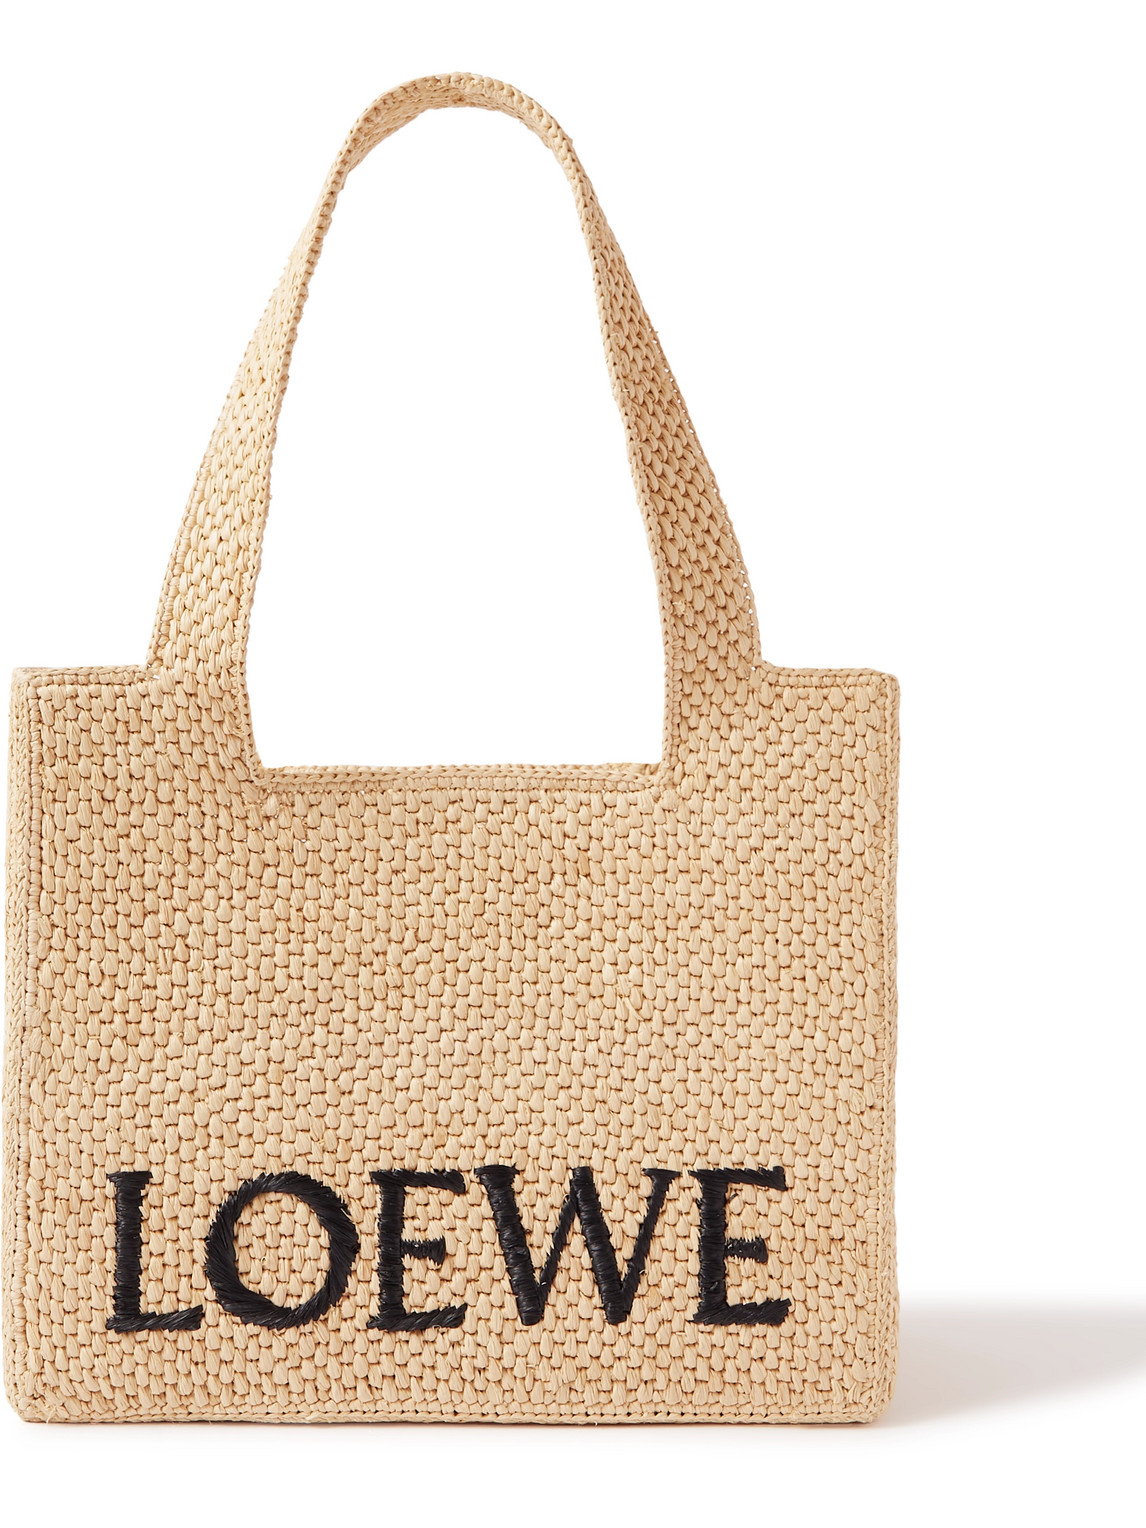 Loewe Embroidered Raffia Basket Tote